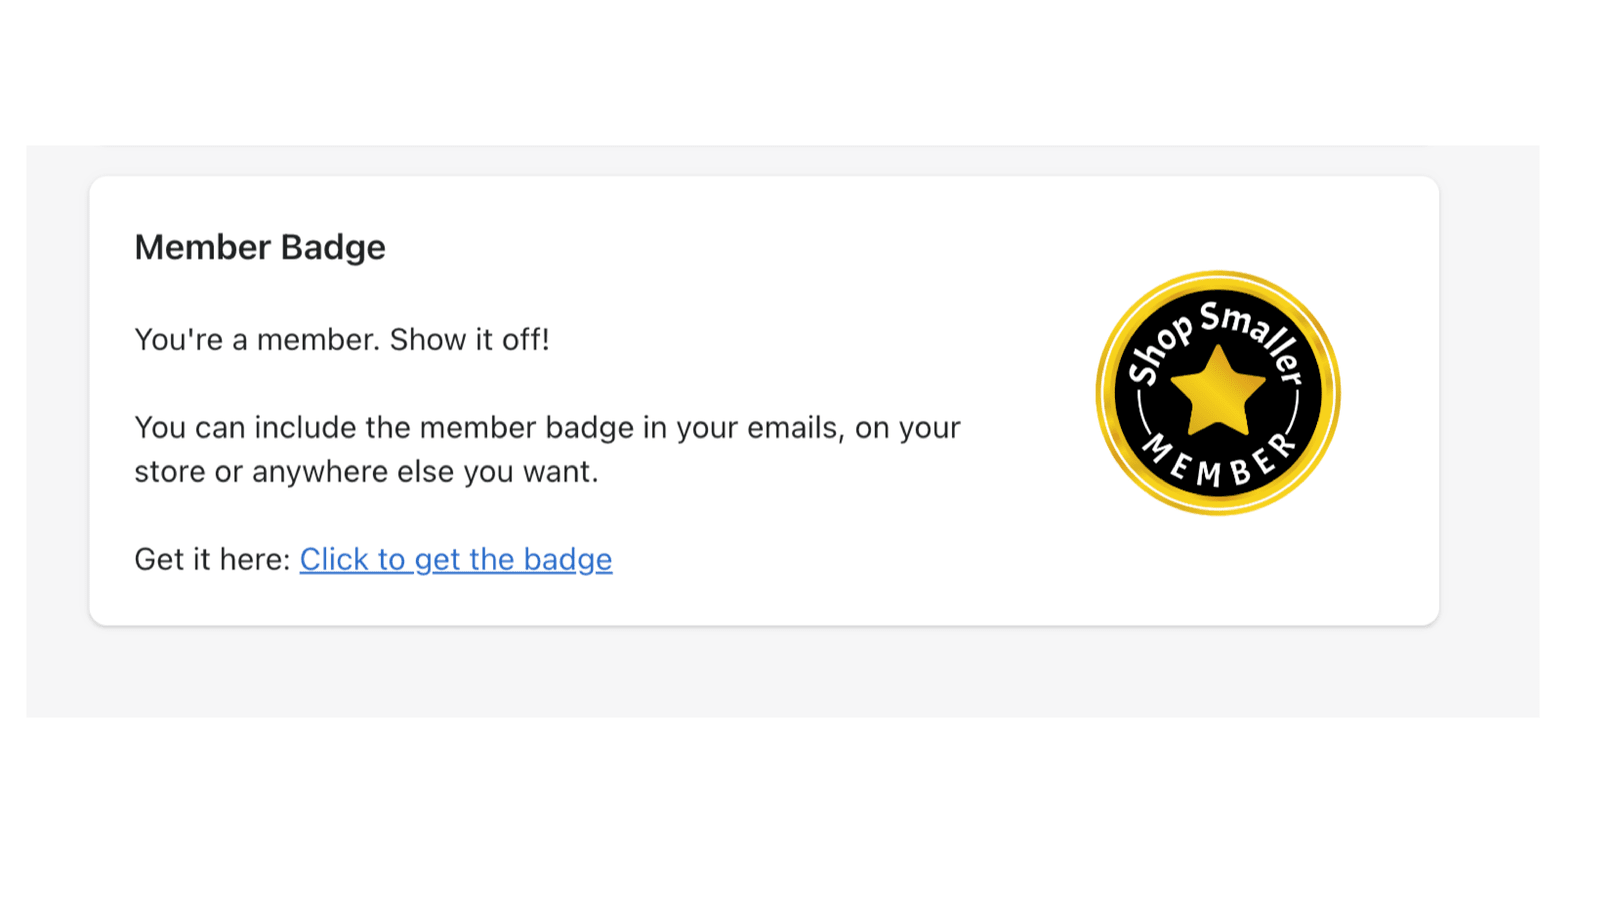 Member badge.